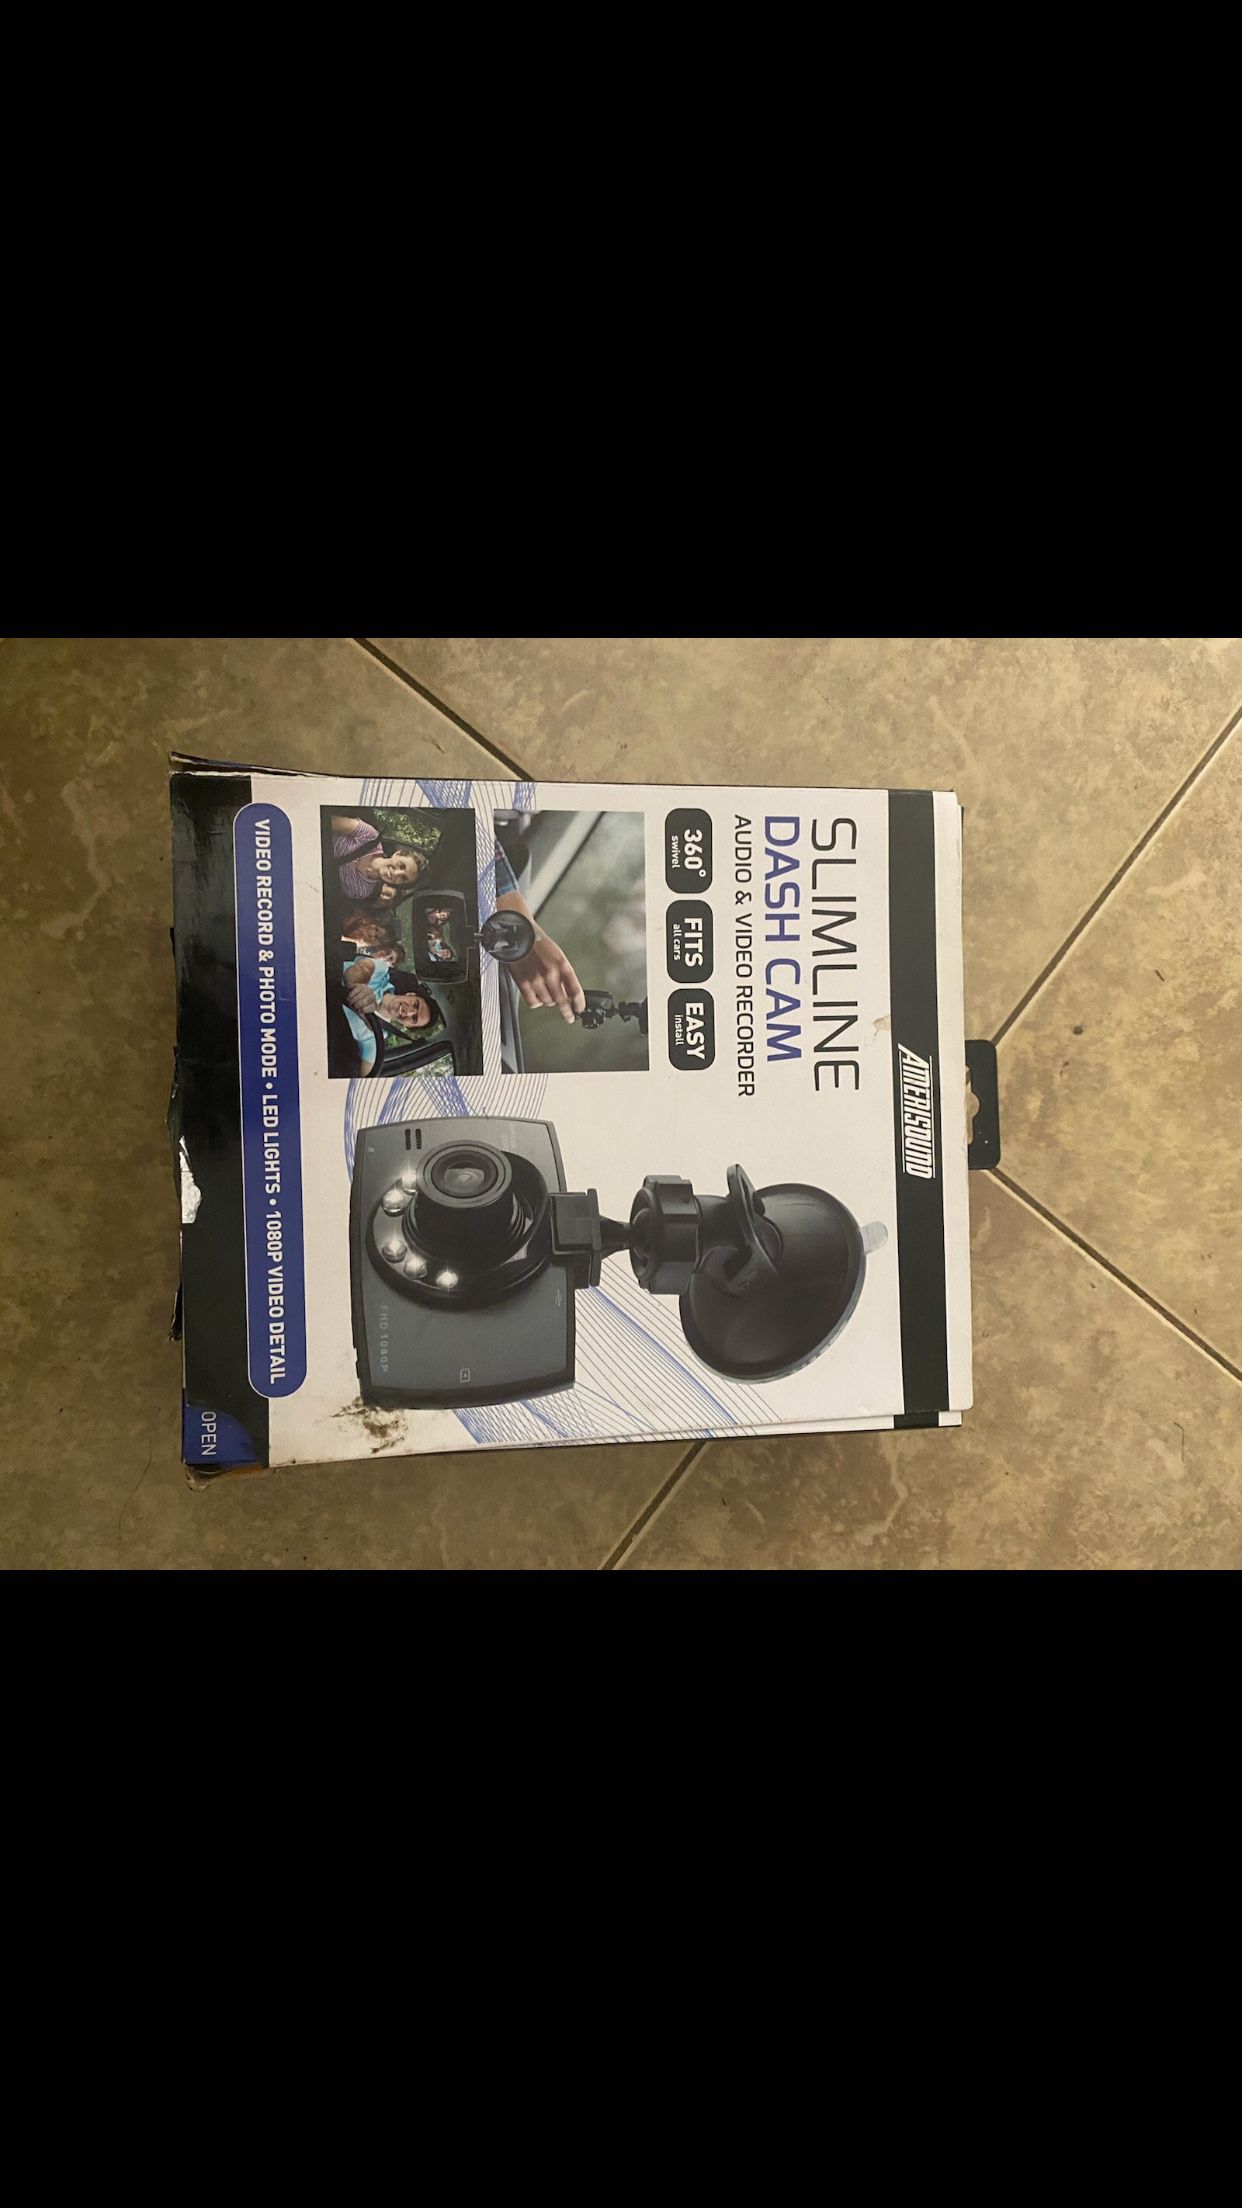 Dash Camera New In Box $15